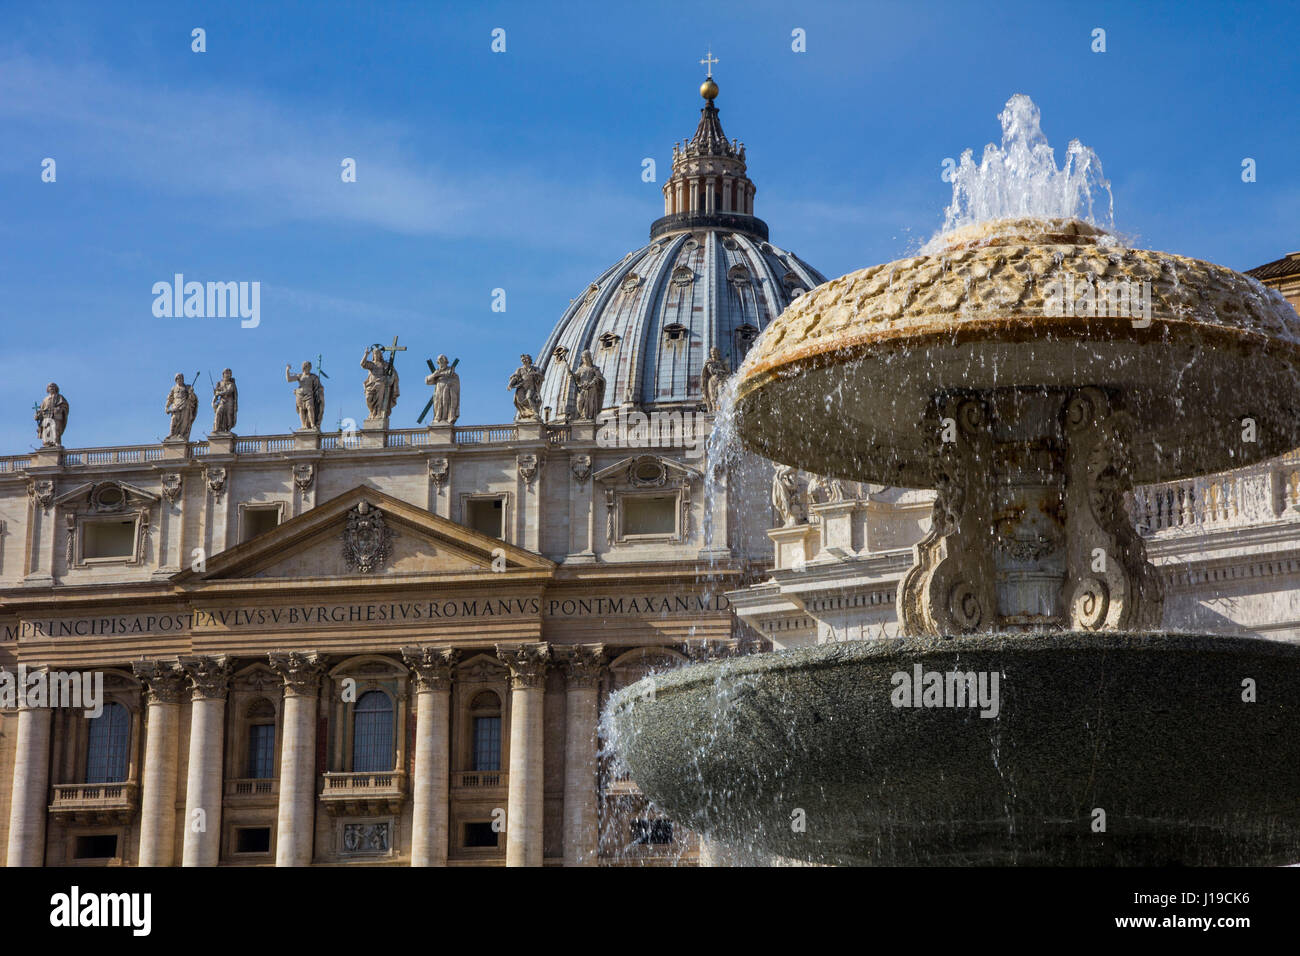 Une vue de la Basilique Saint Pierre, avec la fontaine en marbre 1613 de Carlo Maderno au premier plan, sur la Place Saint Pierre, Vatican, Rome, Italie. Banque D'Images